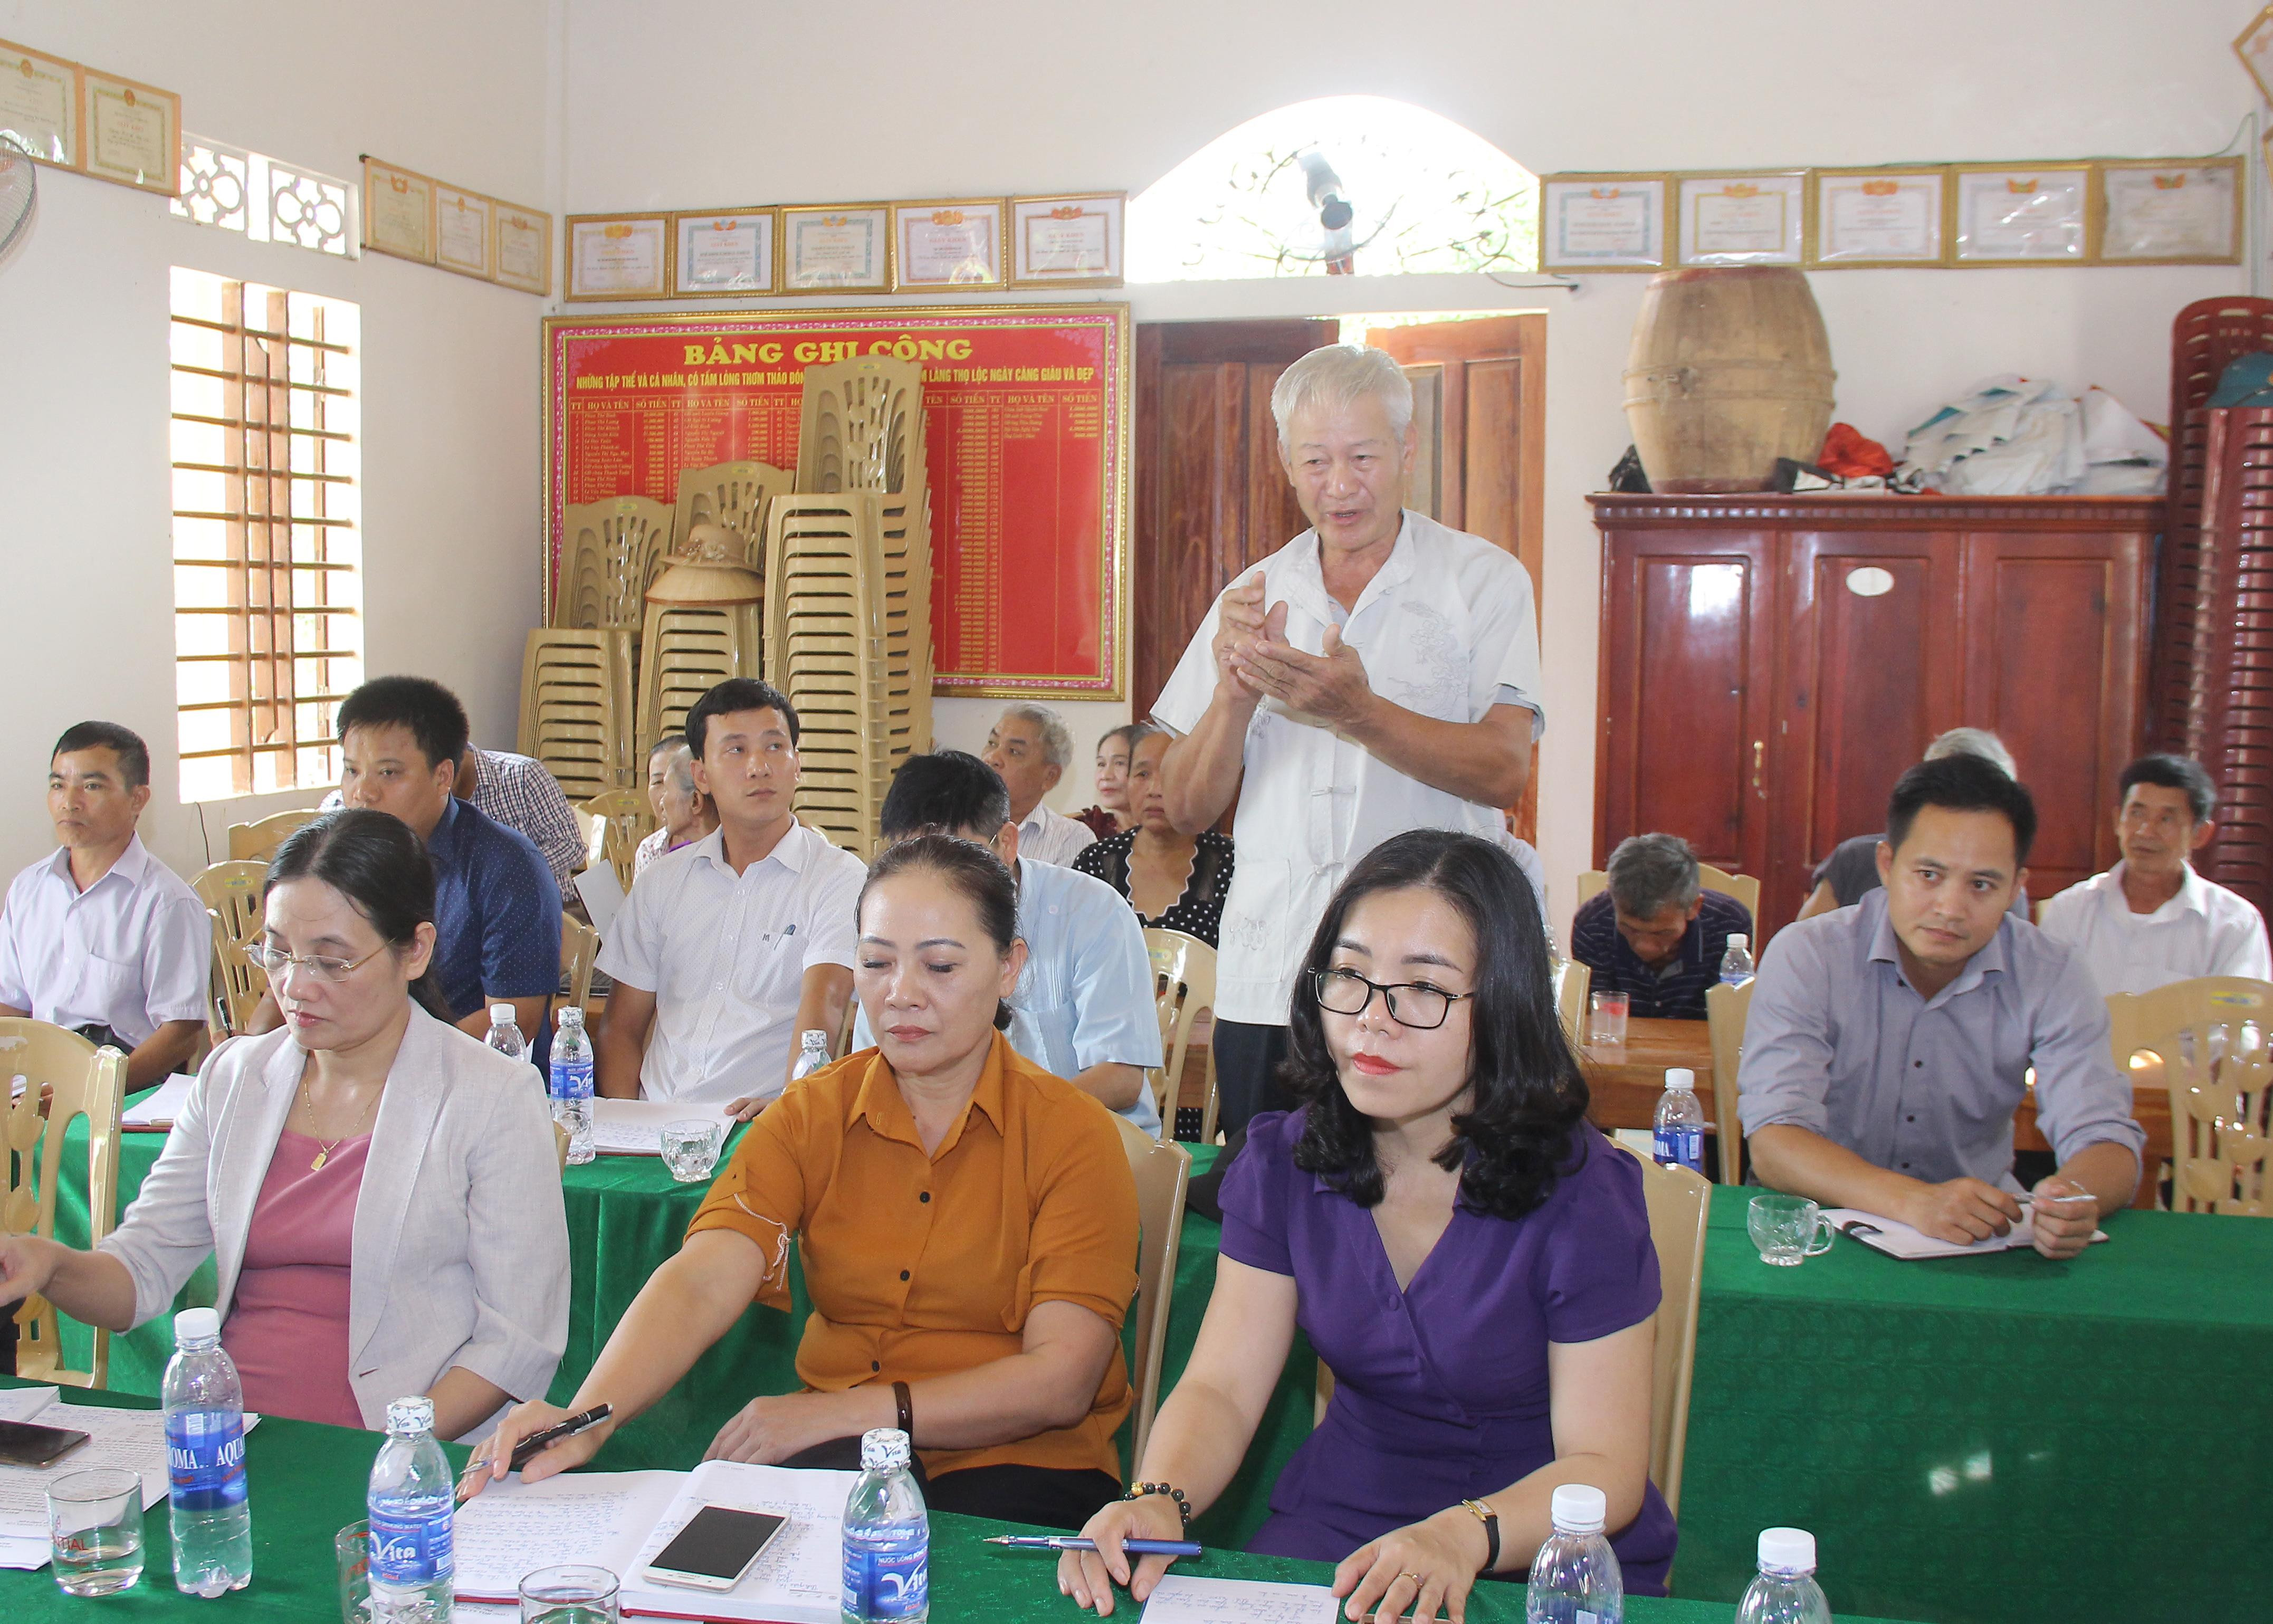 Đảng viên Trần Ngọc Long đề nghị Chi ủy, Chi bộ cần bàn bạc, đề ra giải pháp quyết liệt trong việc đấu tranh với tệ nạn nghiện hút ma túy đối với các trường hợp lao động đi làm ăn xa